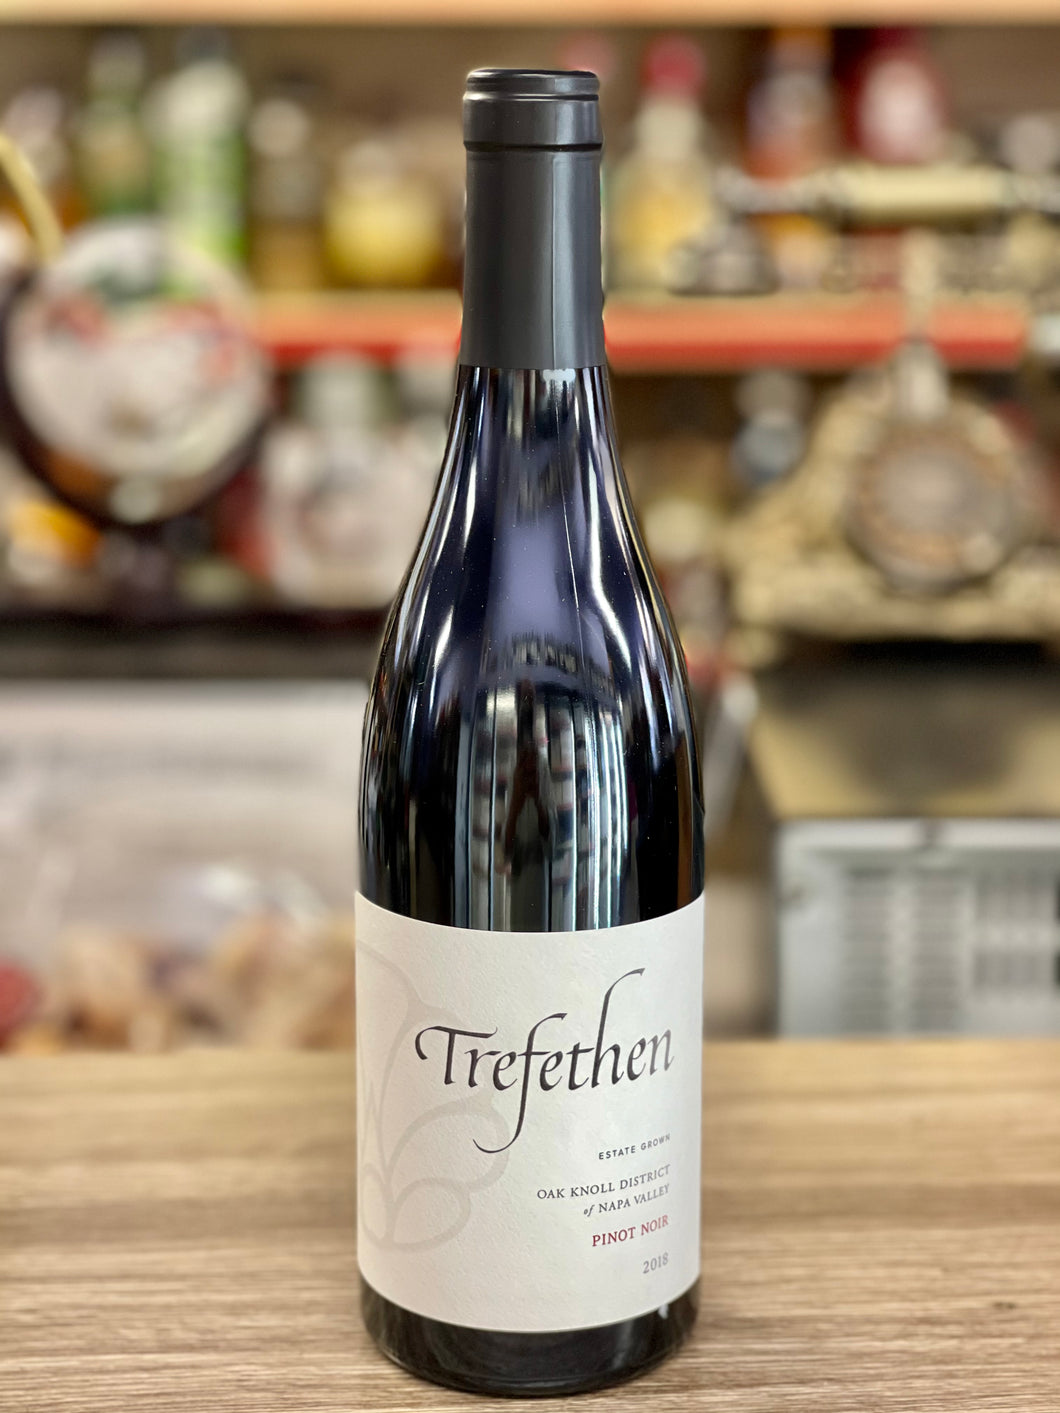 Trefethen Family Vineyards Pinot Noir 2018